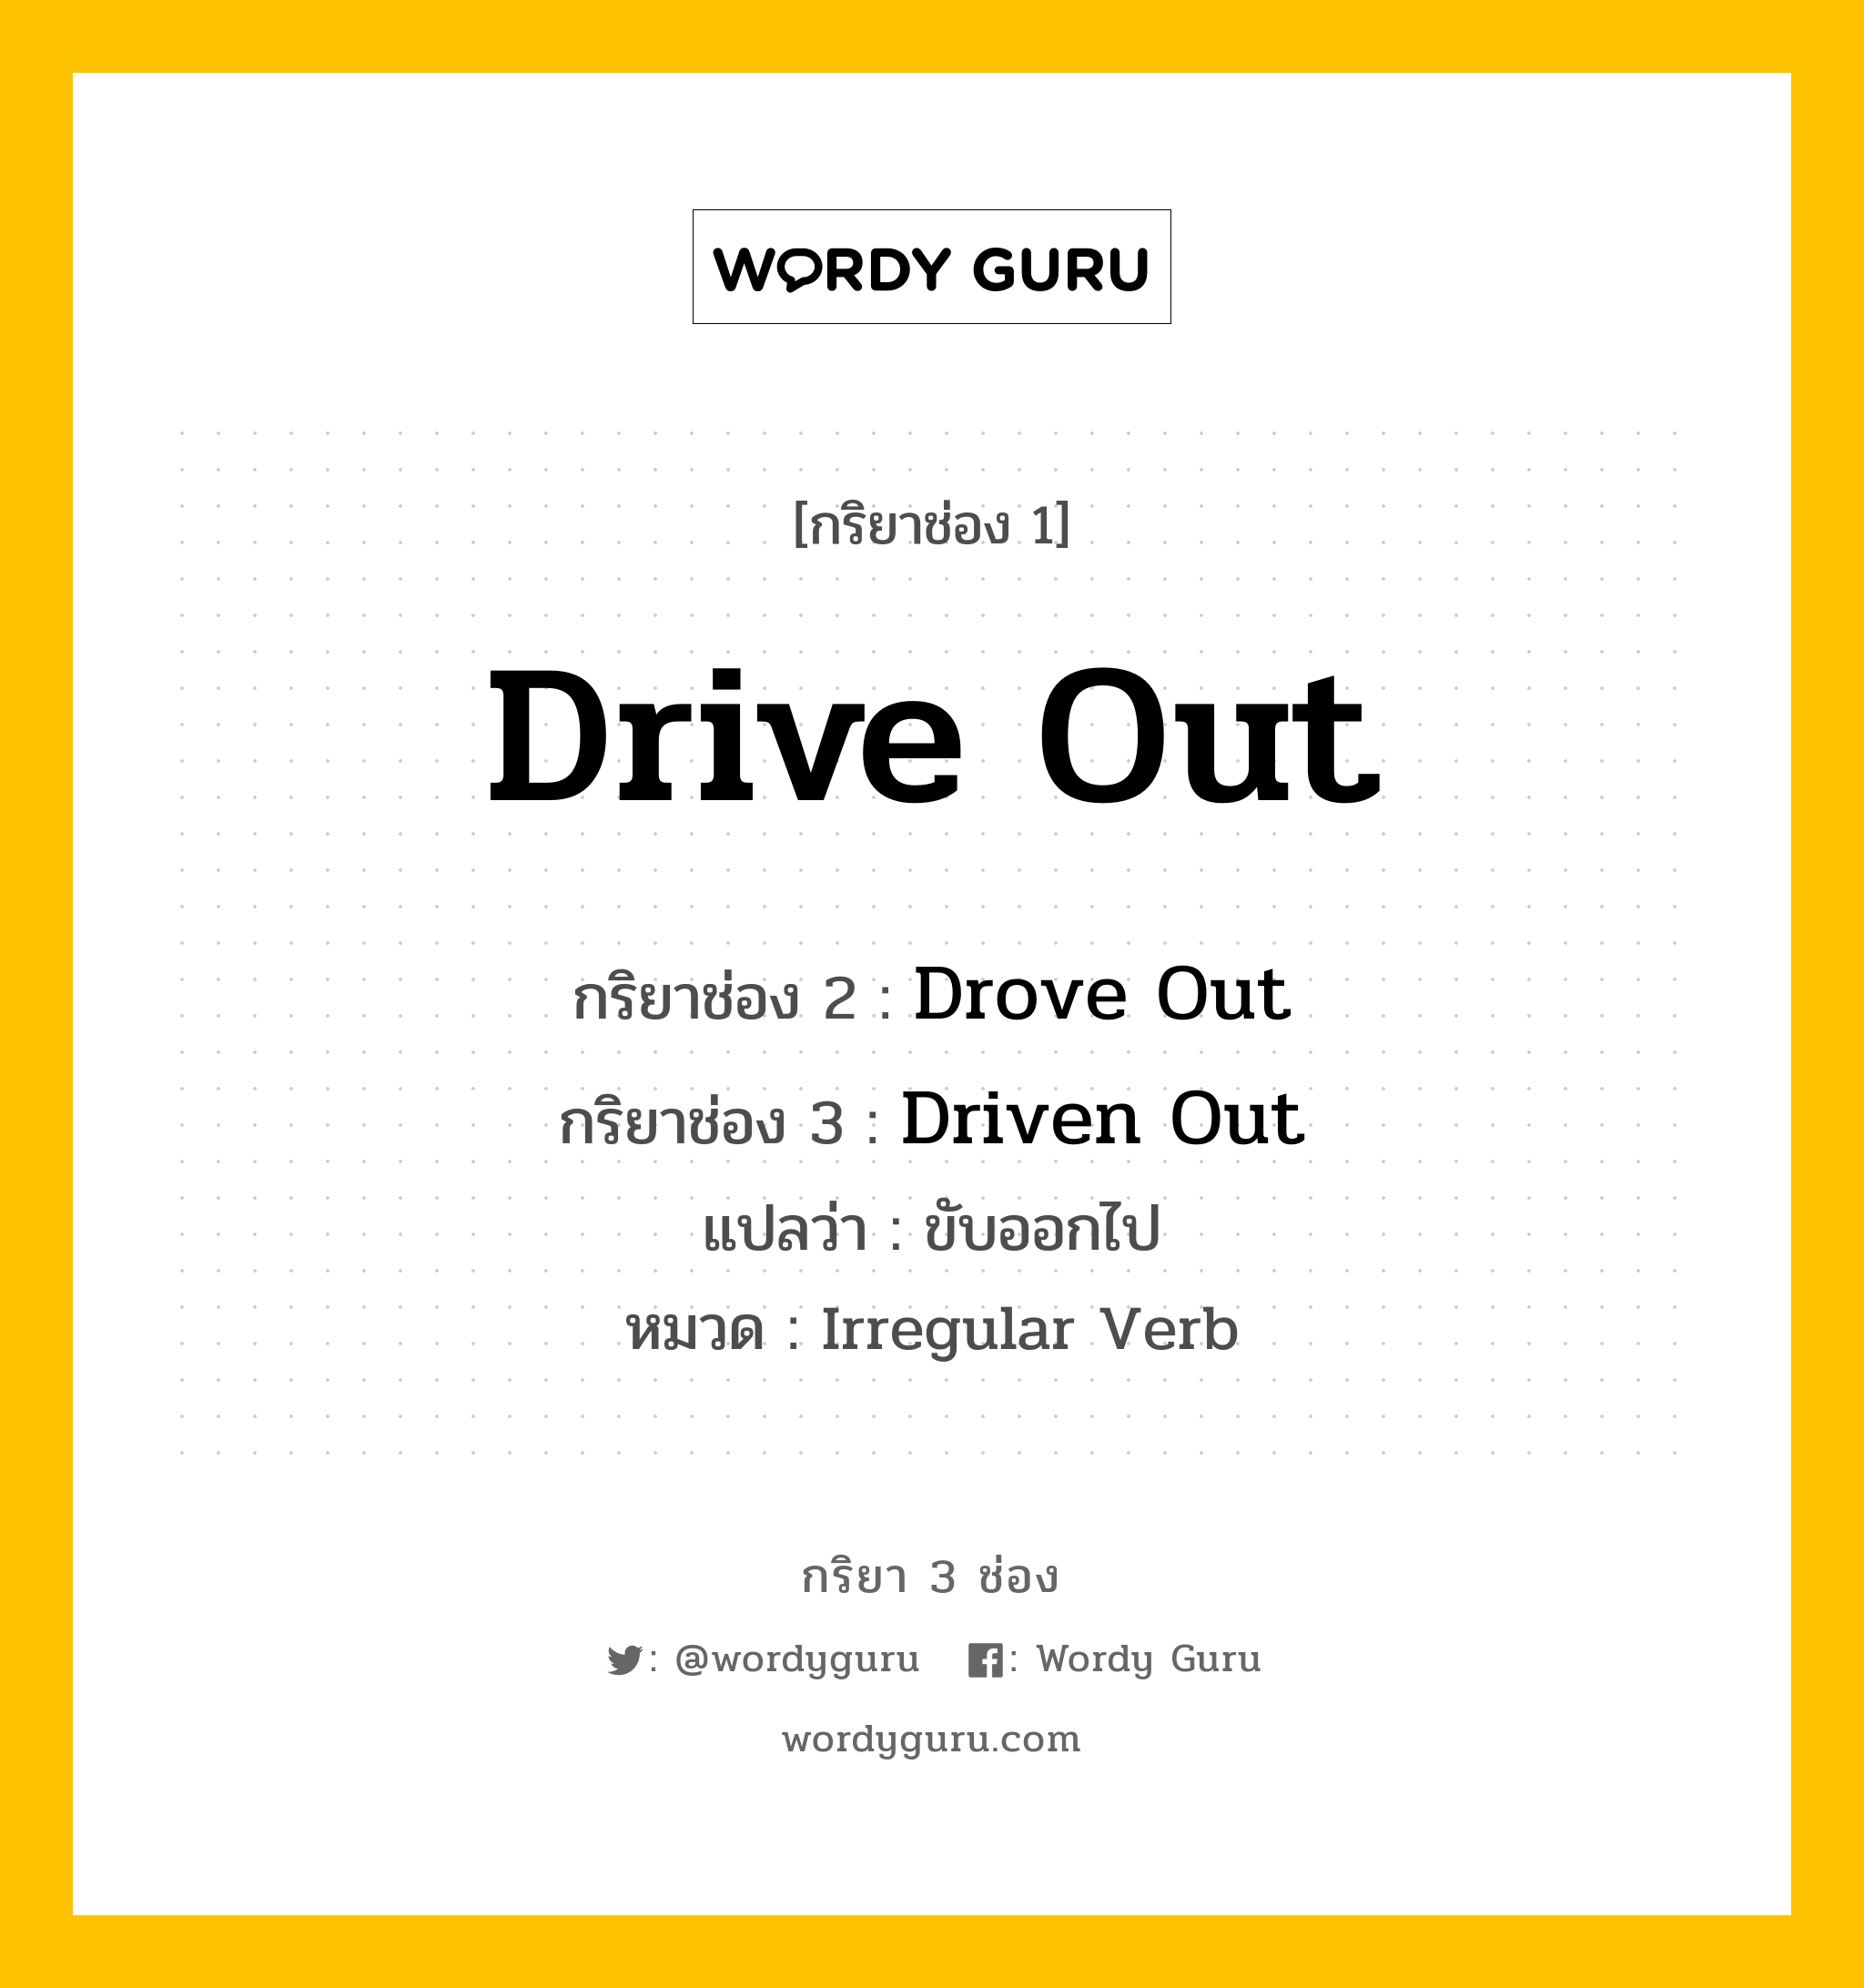 Drive Out มีกริยา 3 ช่องอะไรบ้าง? คำศัพท์ในกลุ่มประเภท Irregular Verb, กริยาช่อง 1 Drive Out กริยาช่อง 2 Drove Out กริยาช่อง 3 Driven Out แปลว่า ขับออกไป หมวด Irregular Verb หมวด Irregular Verb